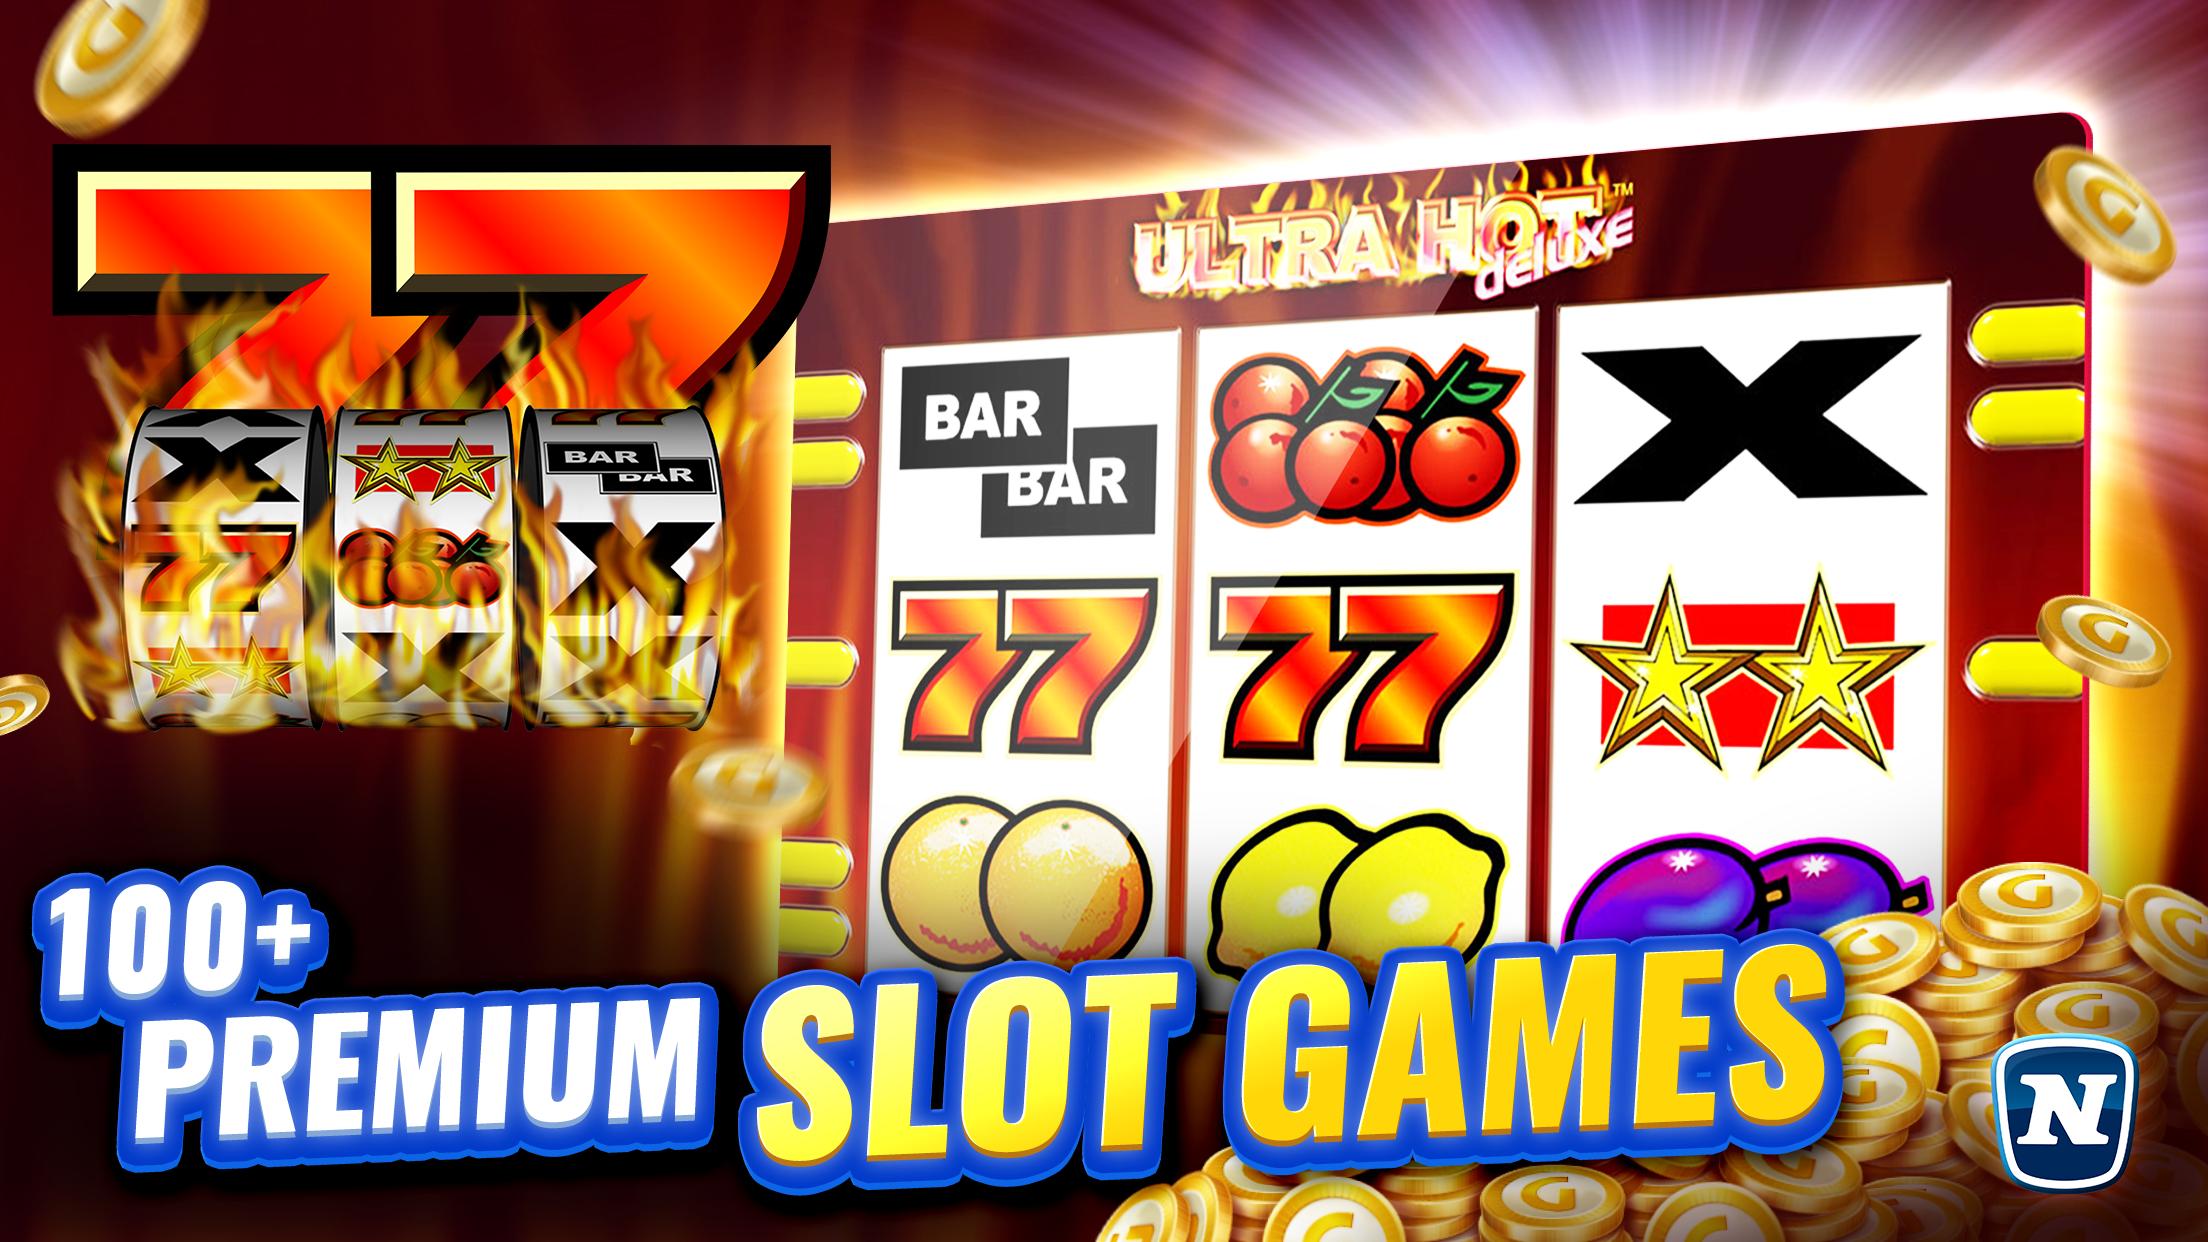 Gaminator Casino Slots - Play Slot Machines 777 3.21.1 Screenshot 2